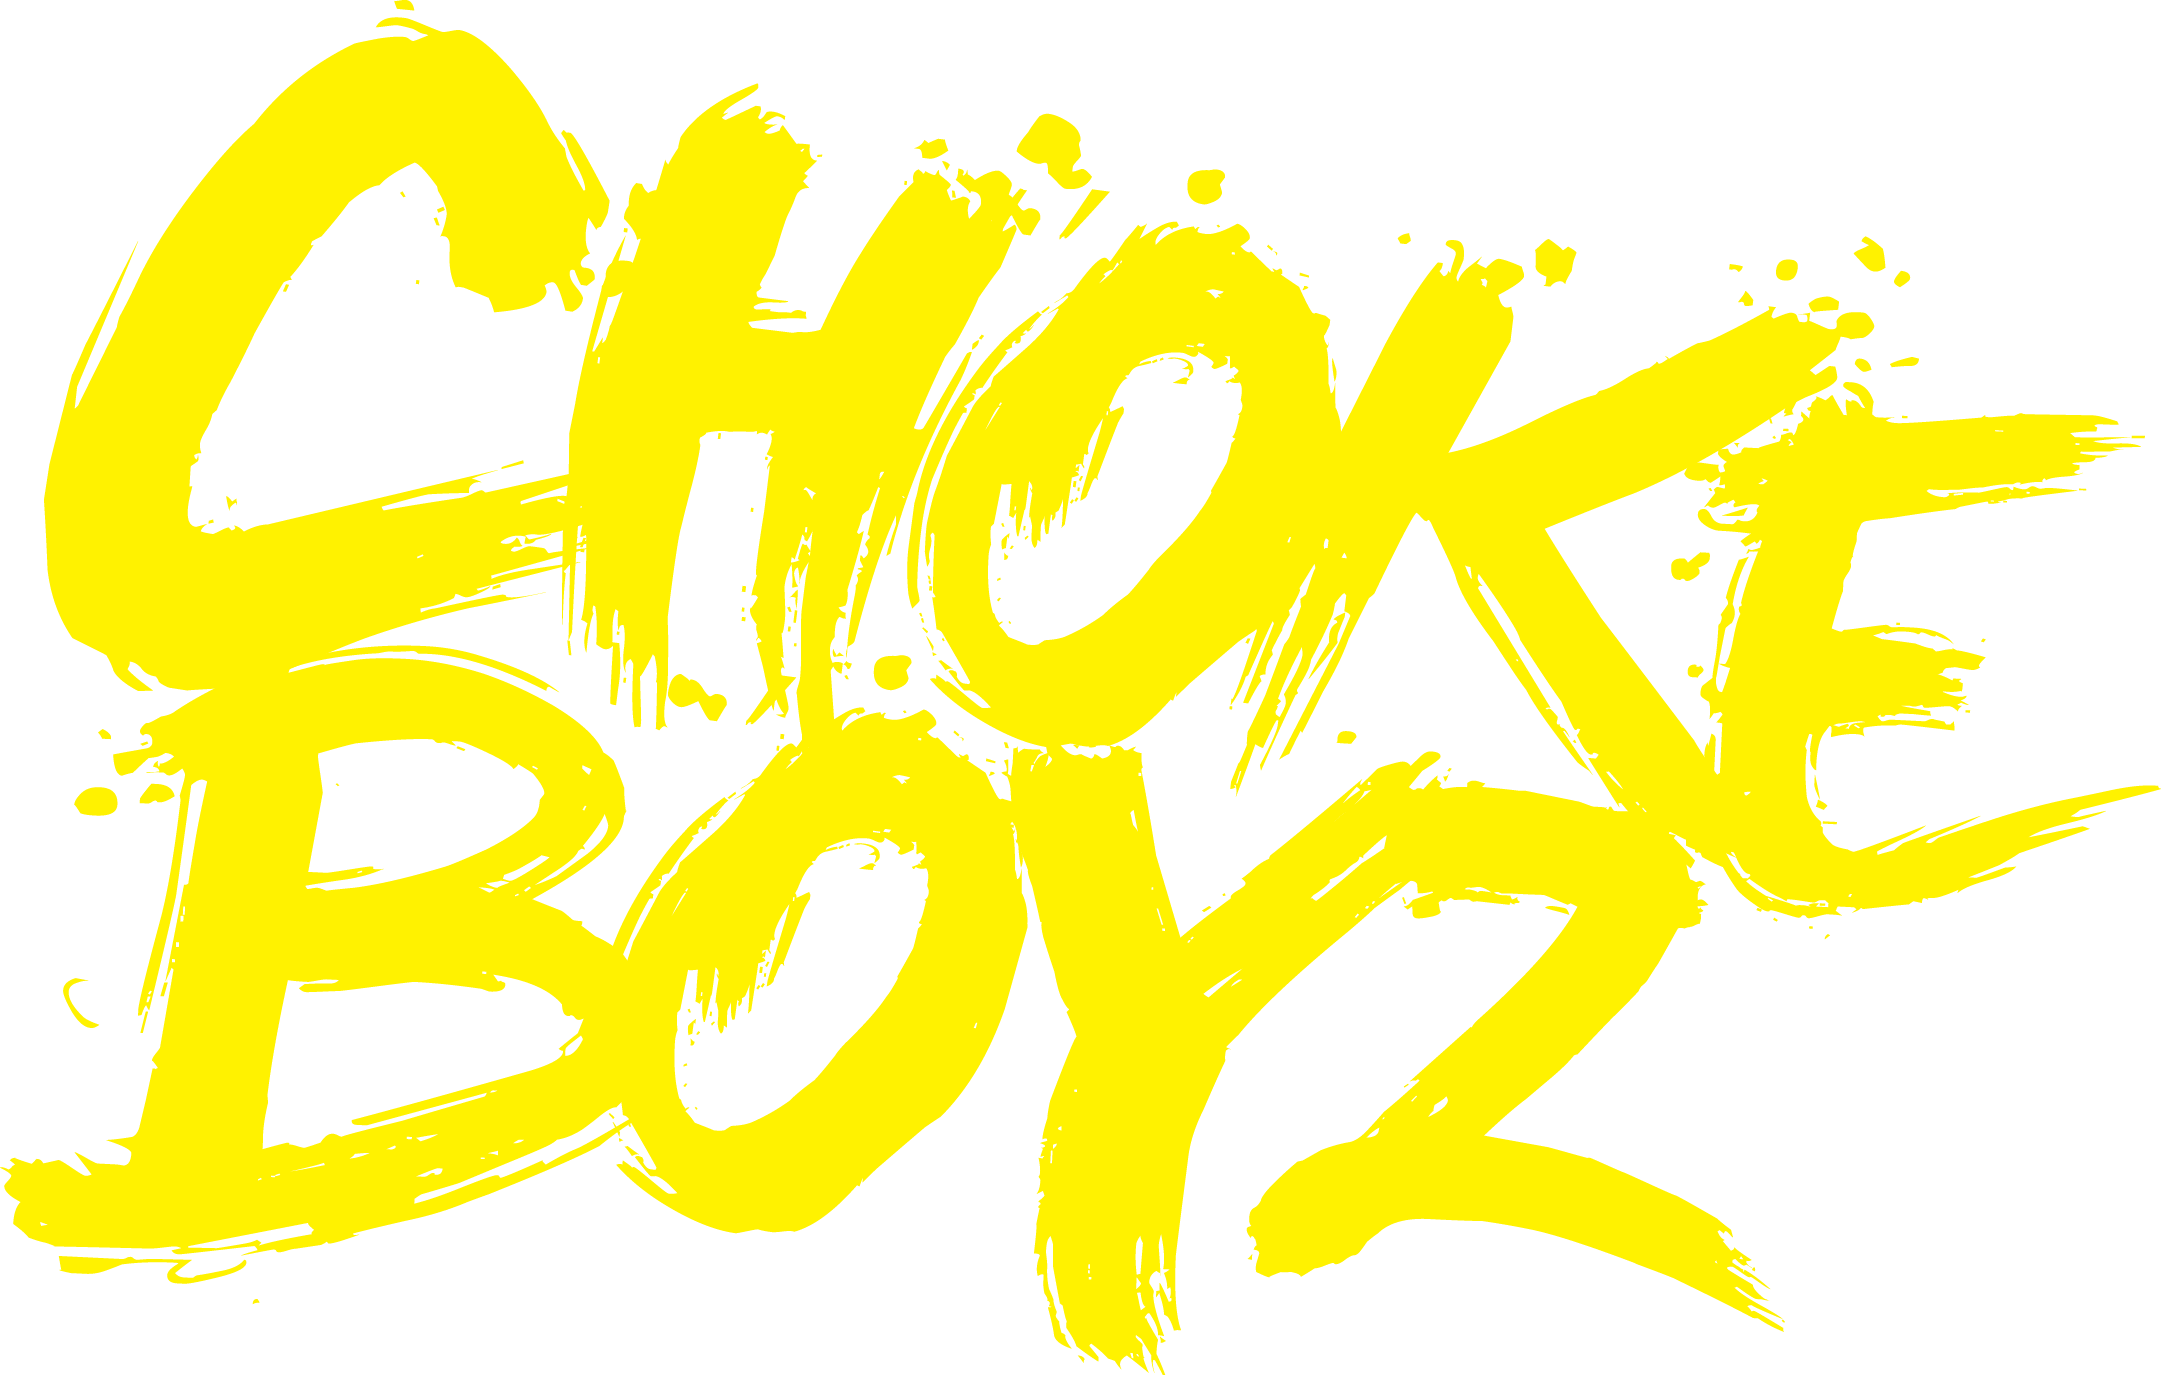 Chokeboyz